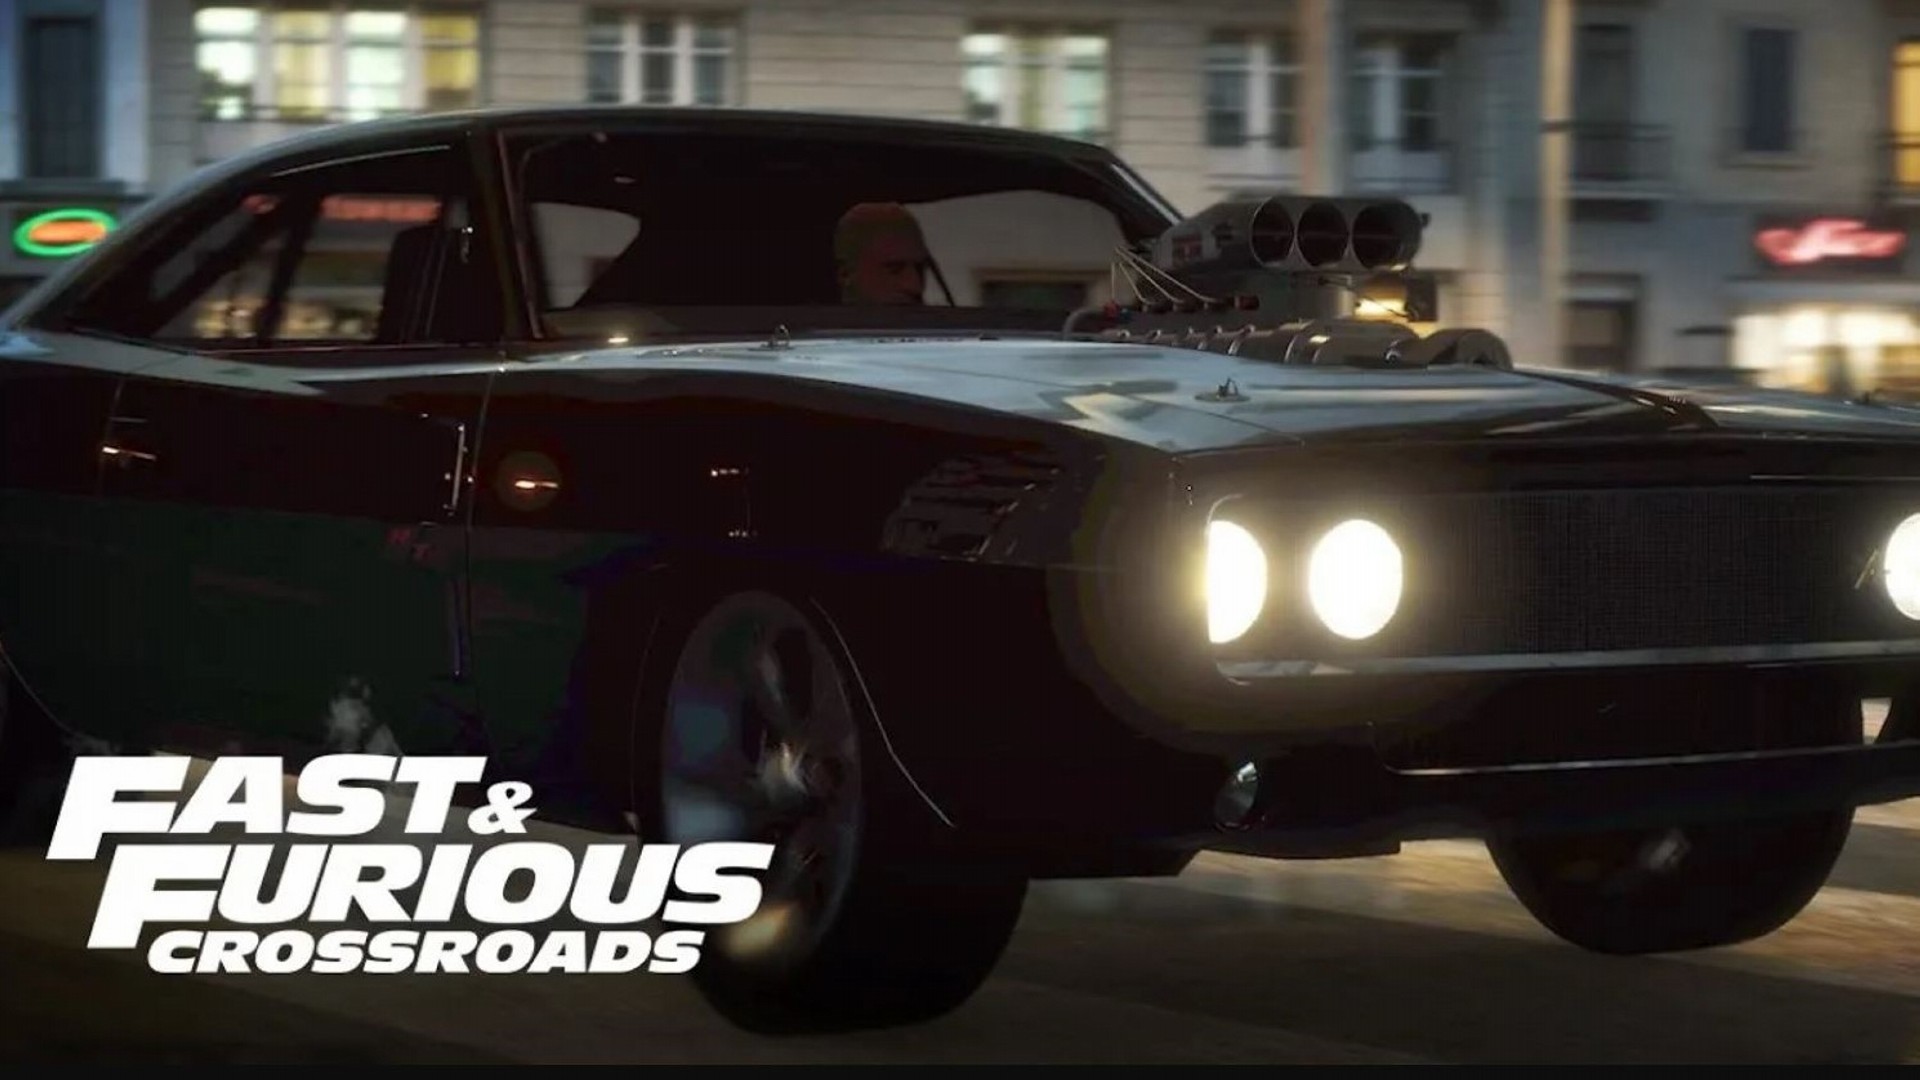 Fast & Furious: Crossroads-verschijningsdatum onzeker na uitstel Fast & Furious 9